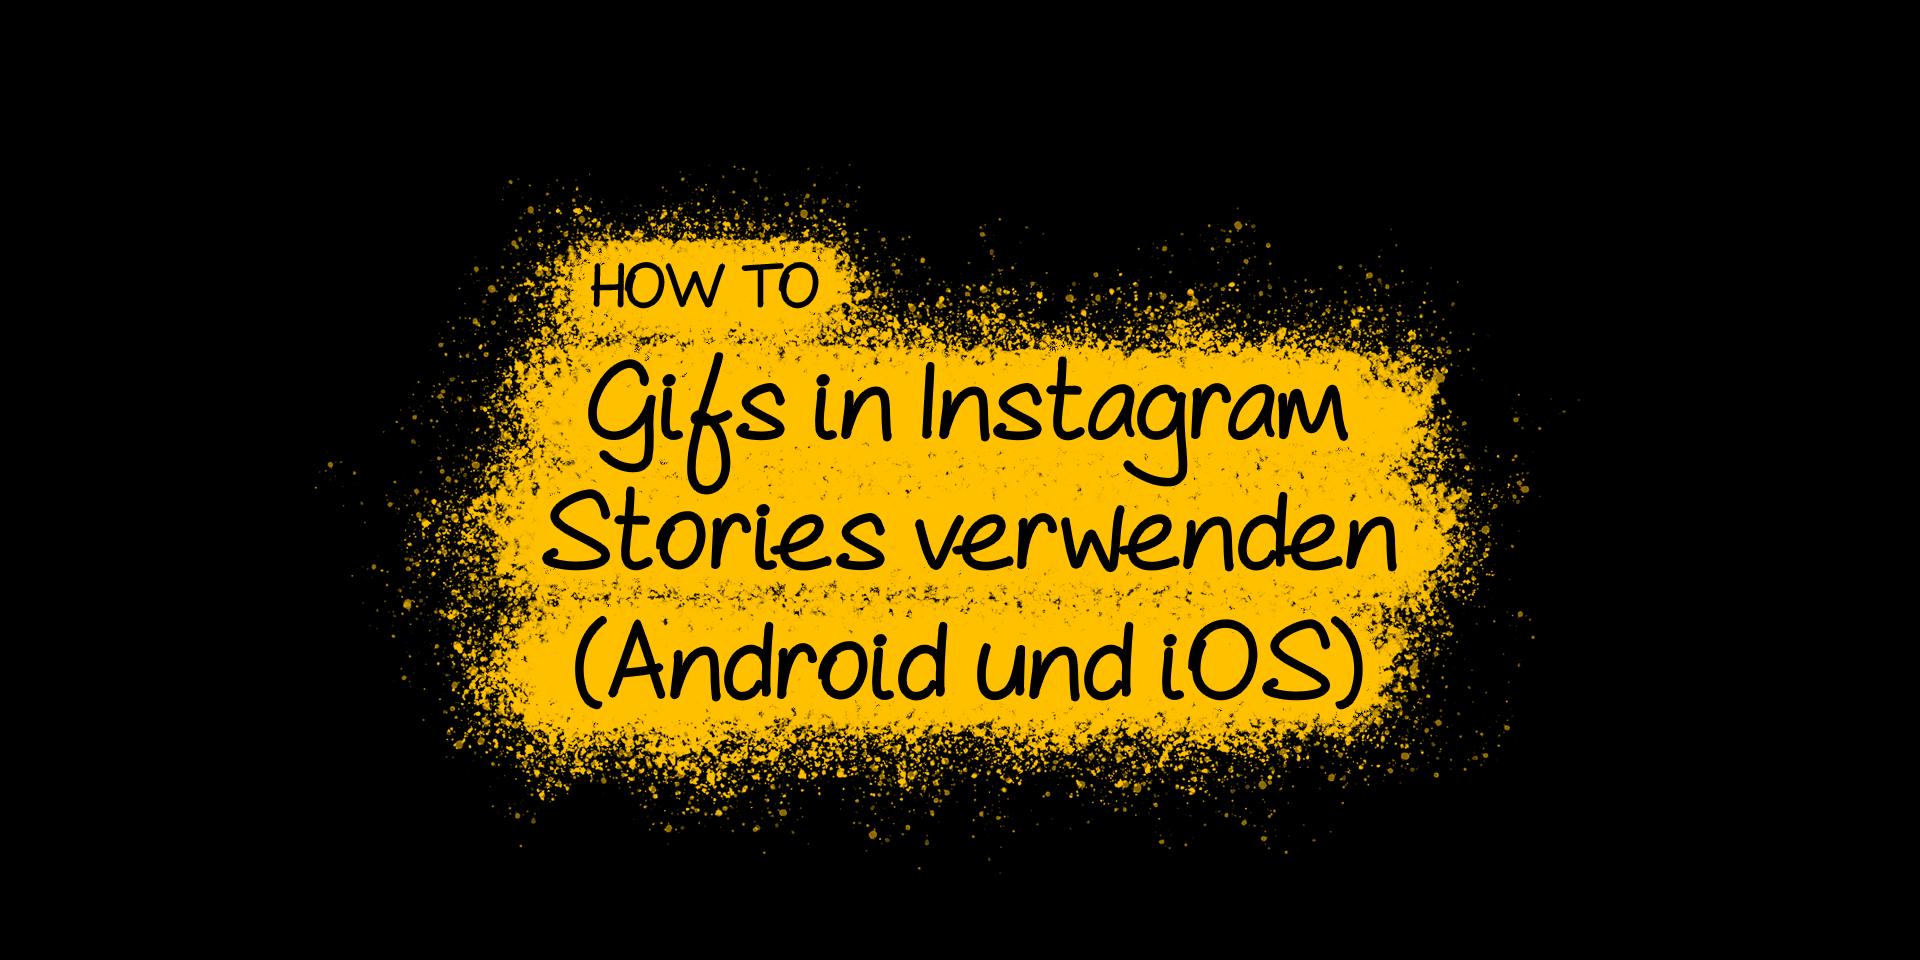 How To Gifs in Instagram Stories verwenden (Android und iOS)